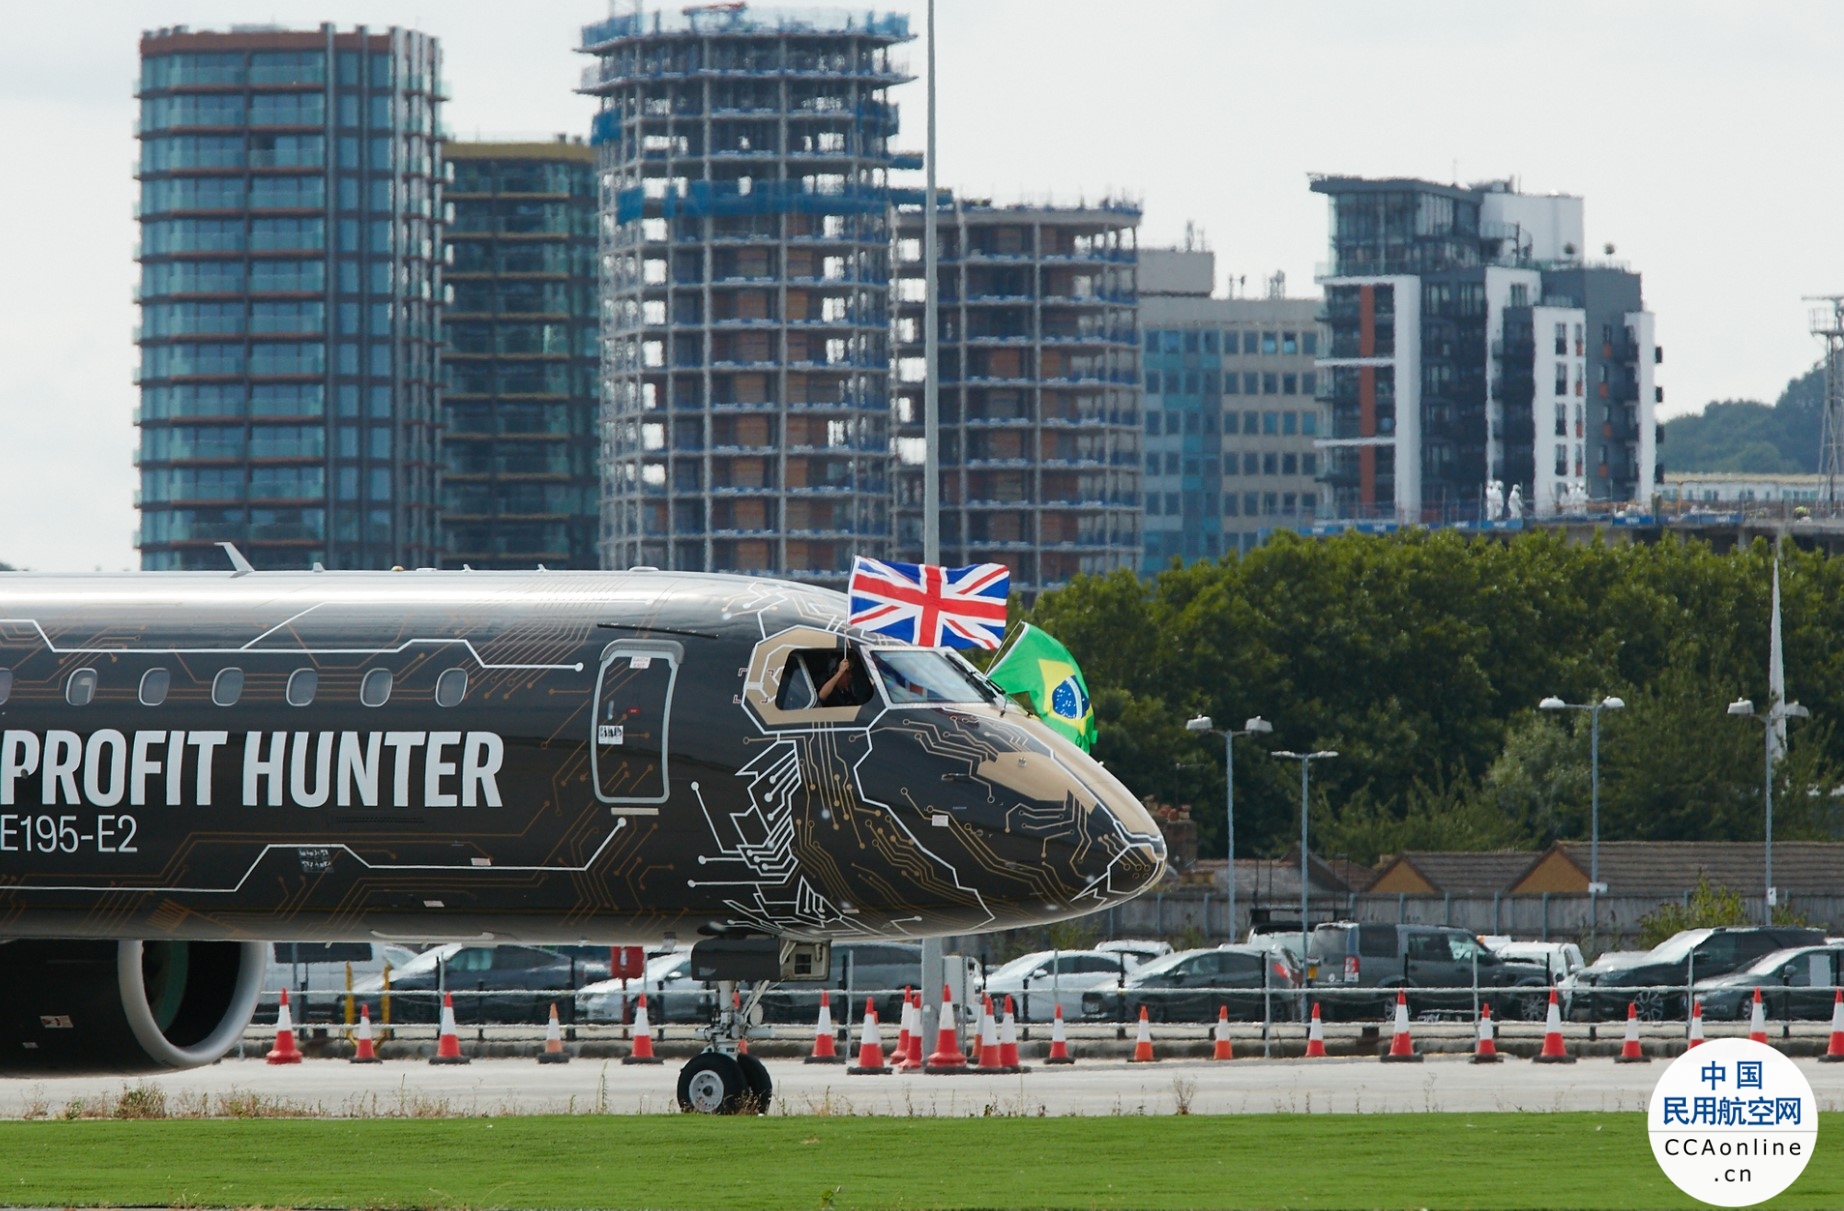 巴航工业“工程狮”涂装E195-E2首次飞抵伦敦城市机场